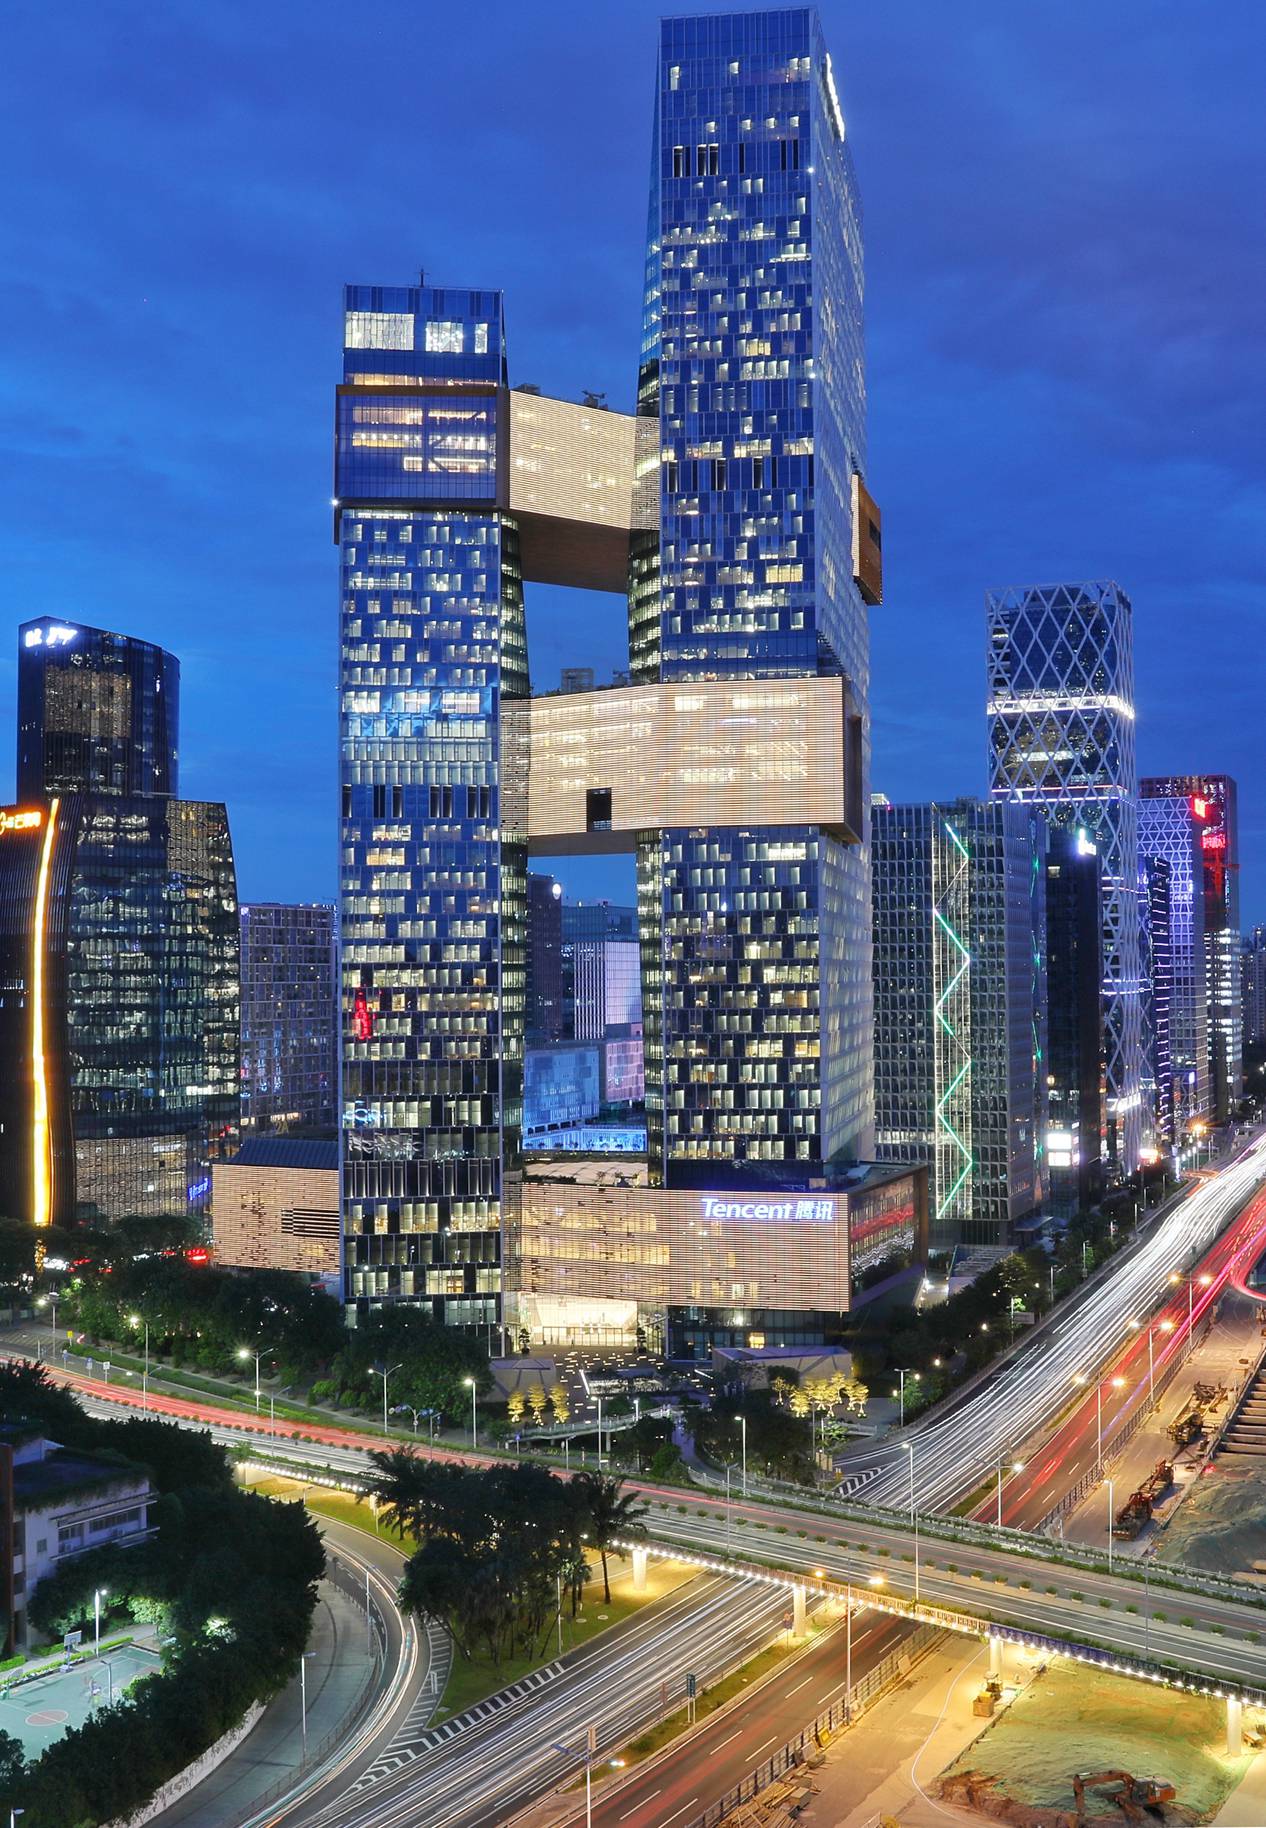 去年11月28日,位于深圳南山区高新科技园的腾讯全球新总部大楼滨海